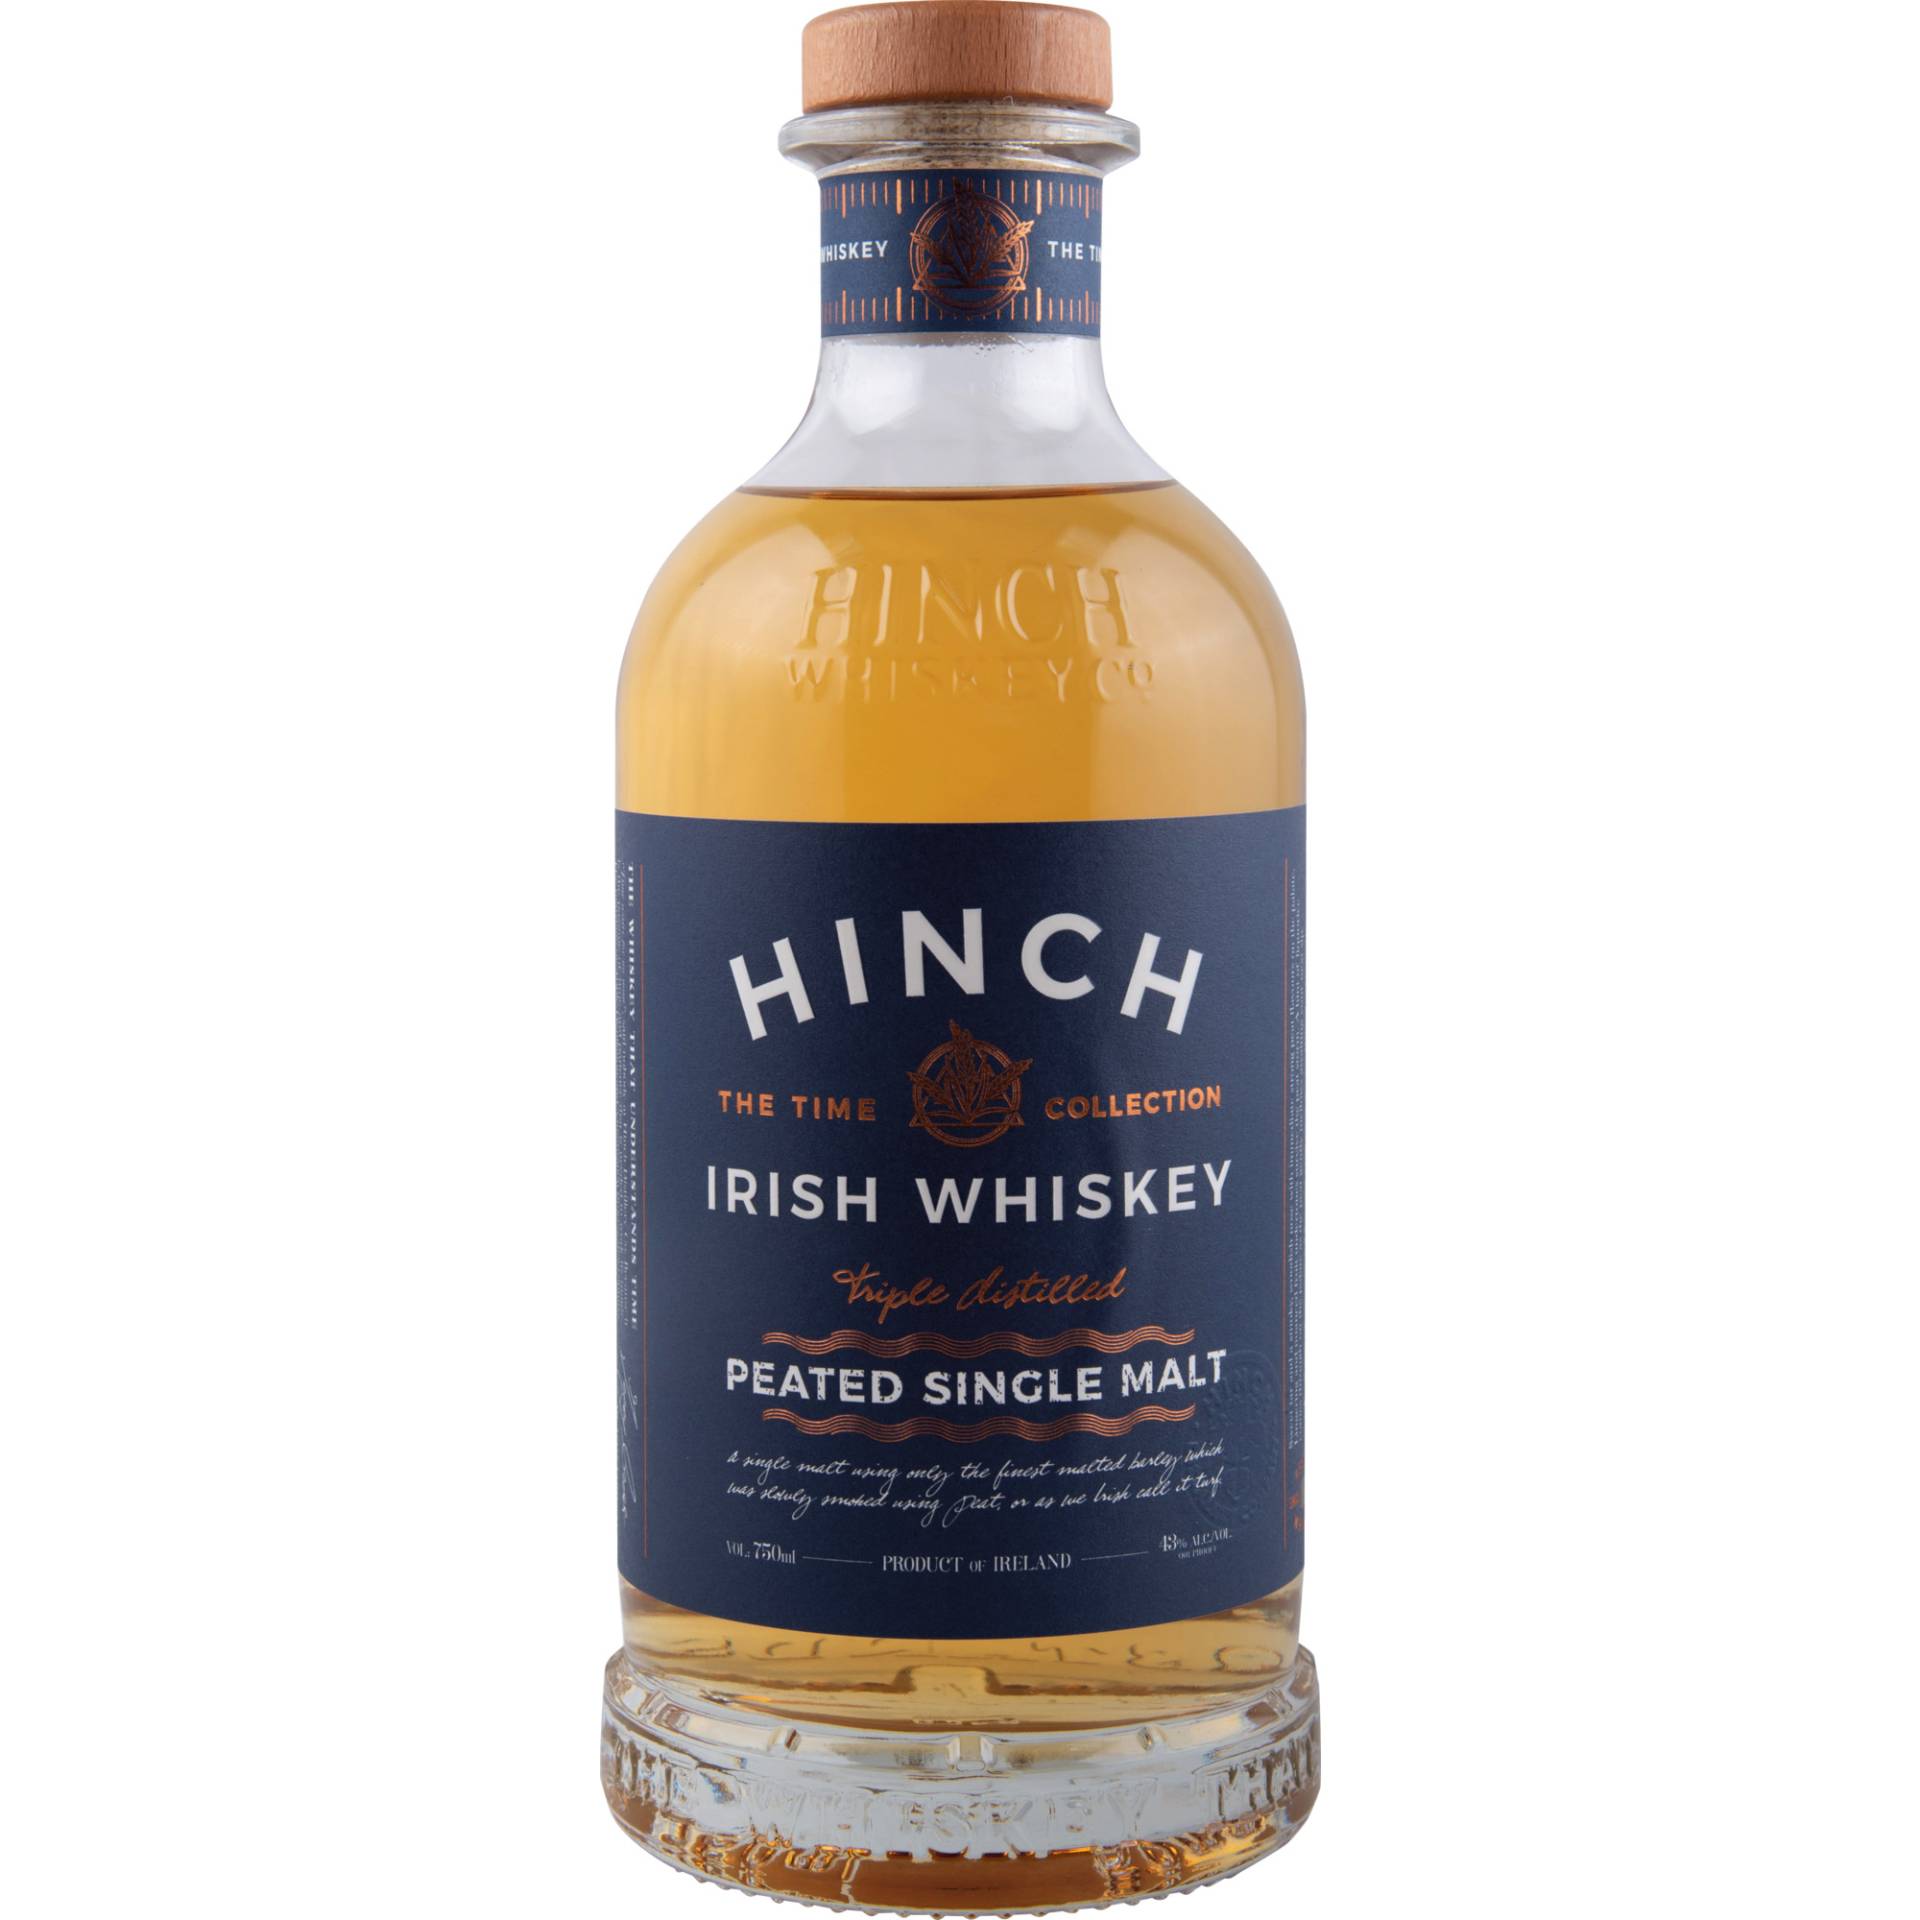 Hinch Peated Single Malt Irish Whiskey, Irland, 0,7 L, 43 Vol., Spirituosen von Hinch Distillery Ltd. 19 Carryduff Road BT27 6TZ N Ireland